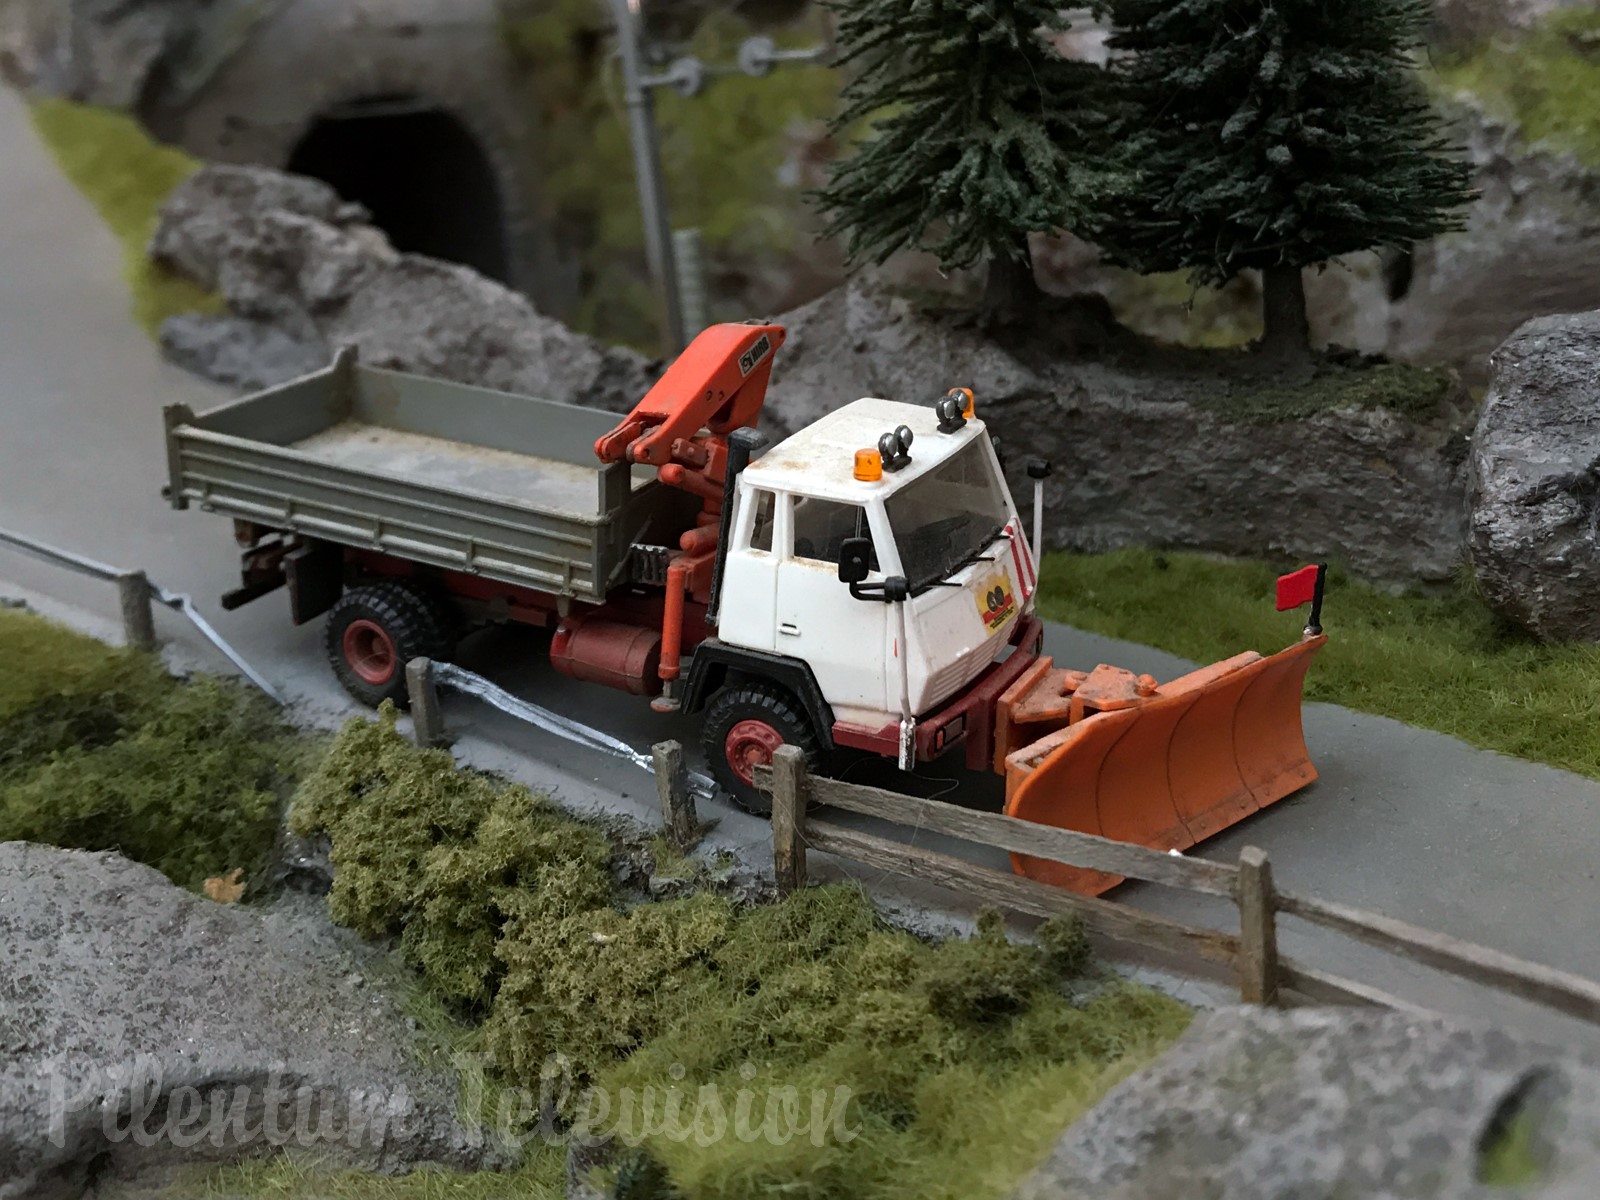 Pociągi w skali HO w Szwajcarii: Piękna szwajcarska makieta kolejowa Briana Rodhama